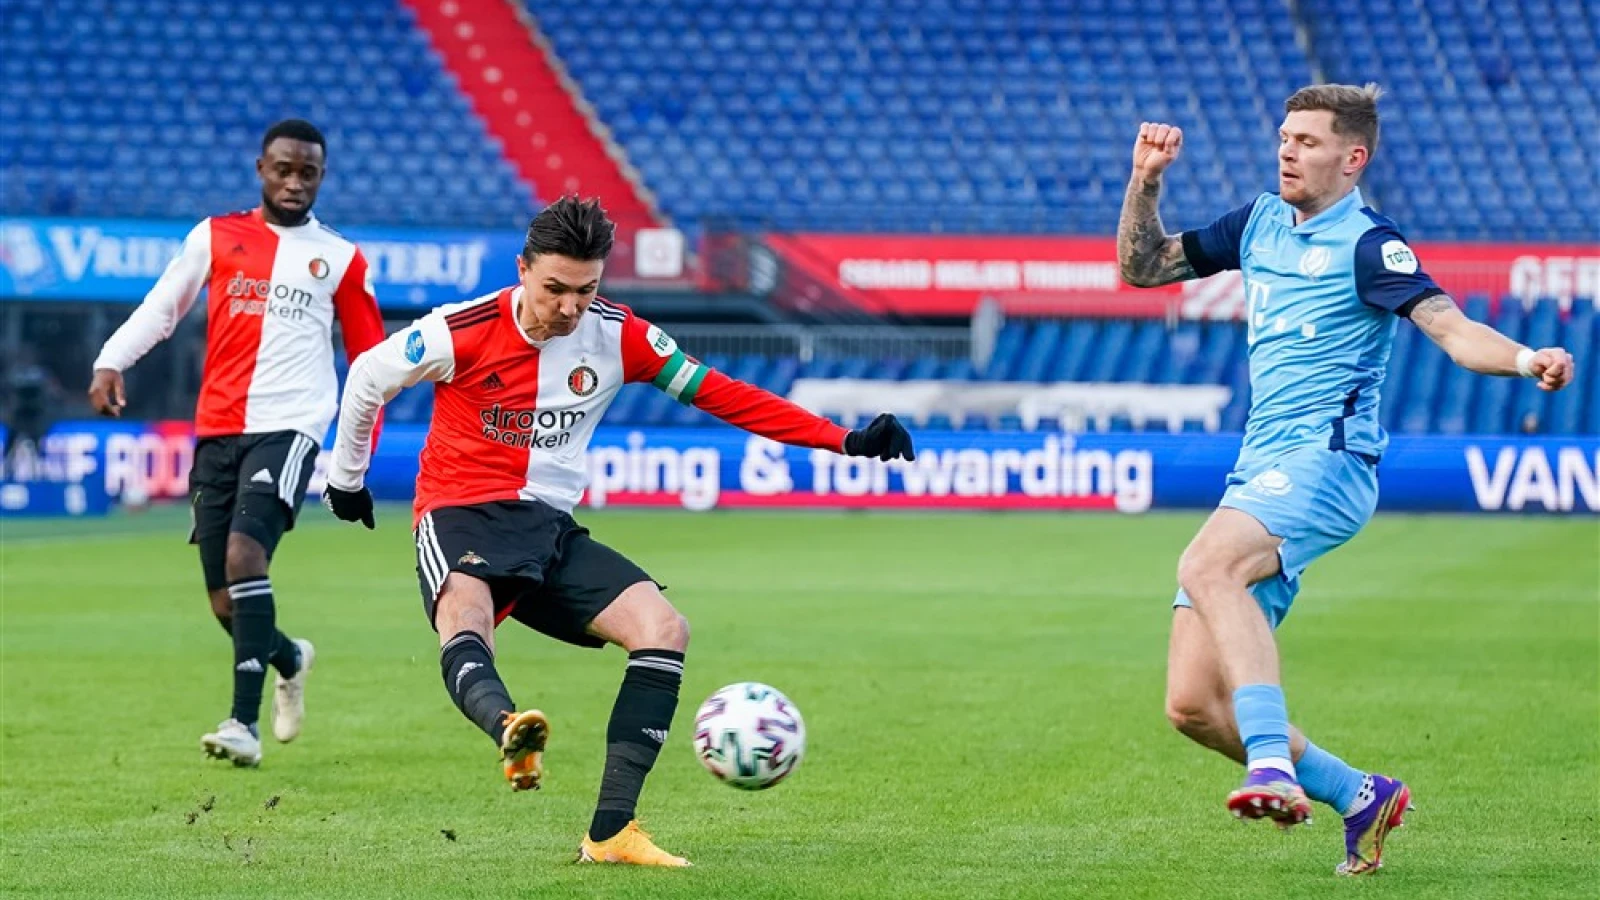 LIVE | Feyenoord - FC Utrecht 1-1 | Einde wedstrijd